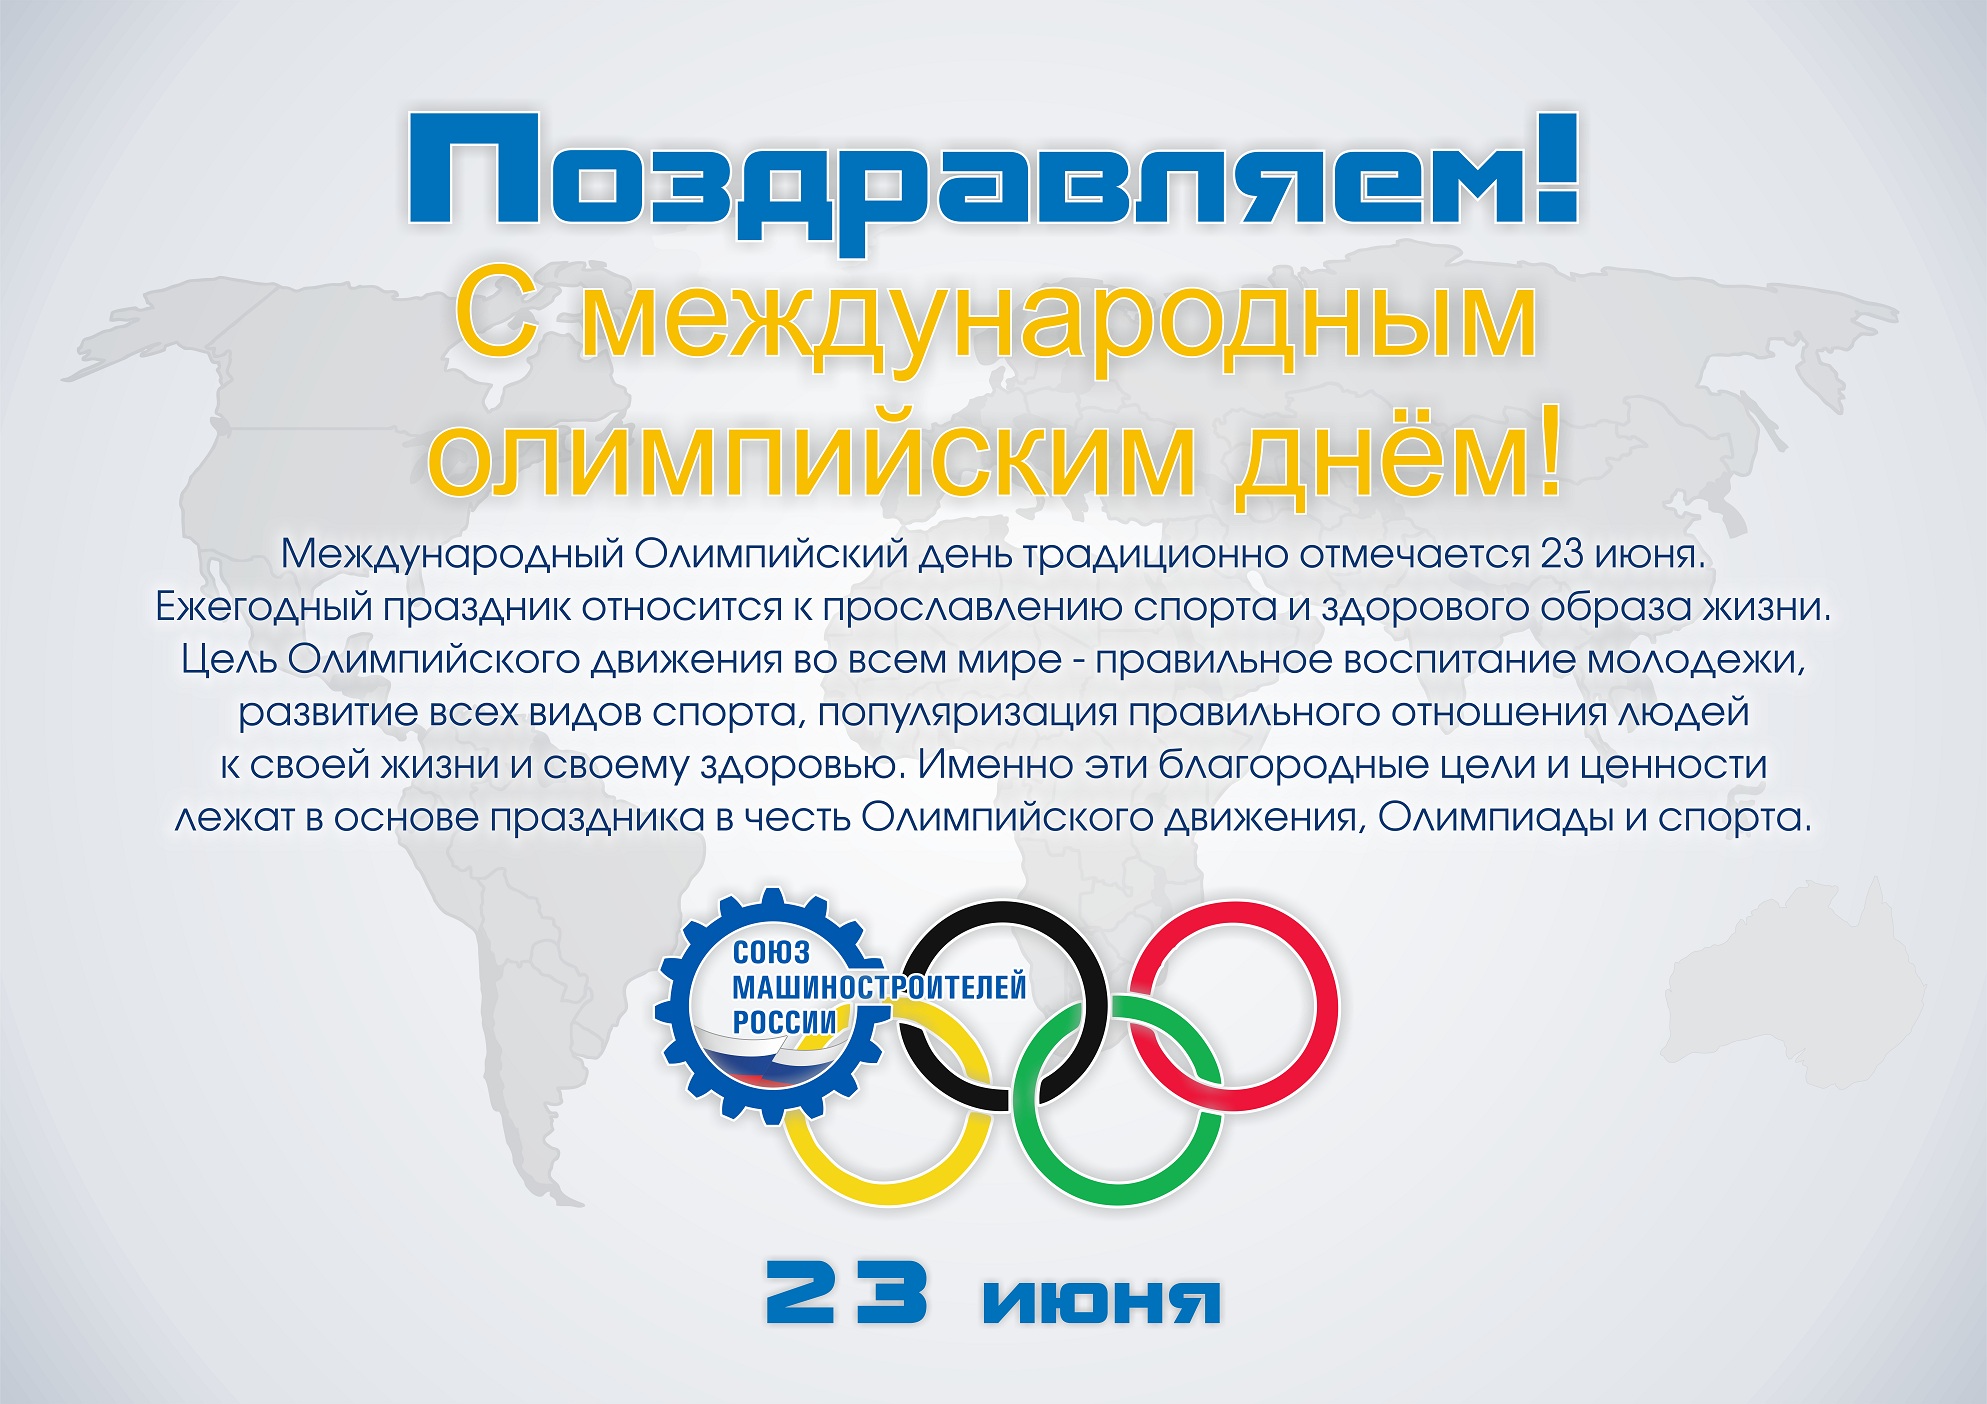 Международный Олимпийский день отмечается